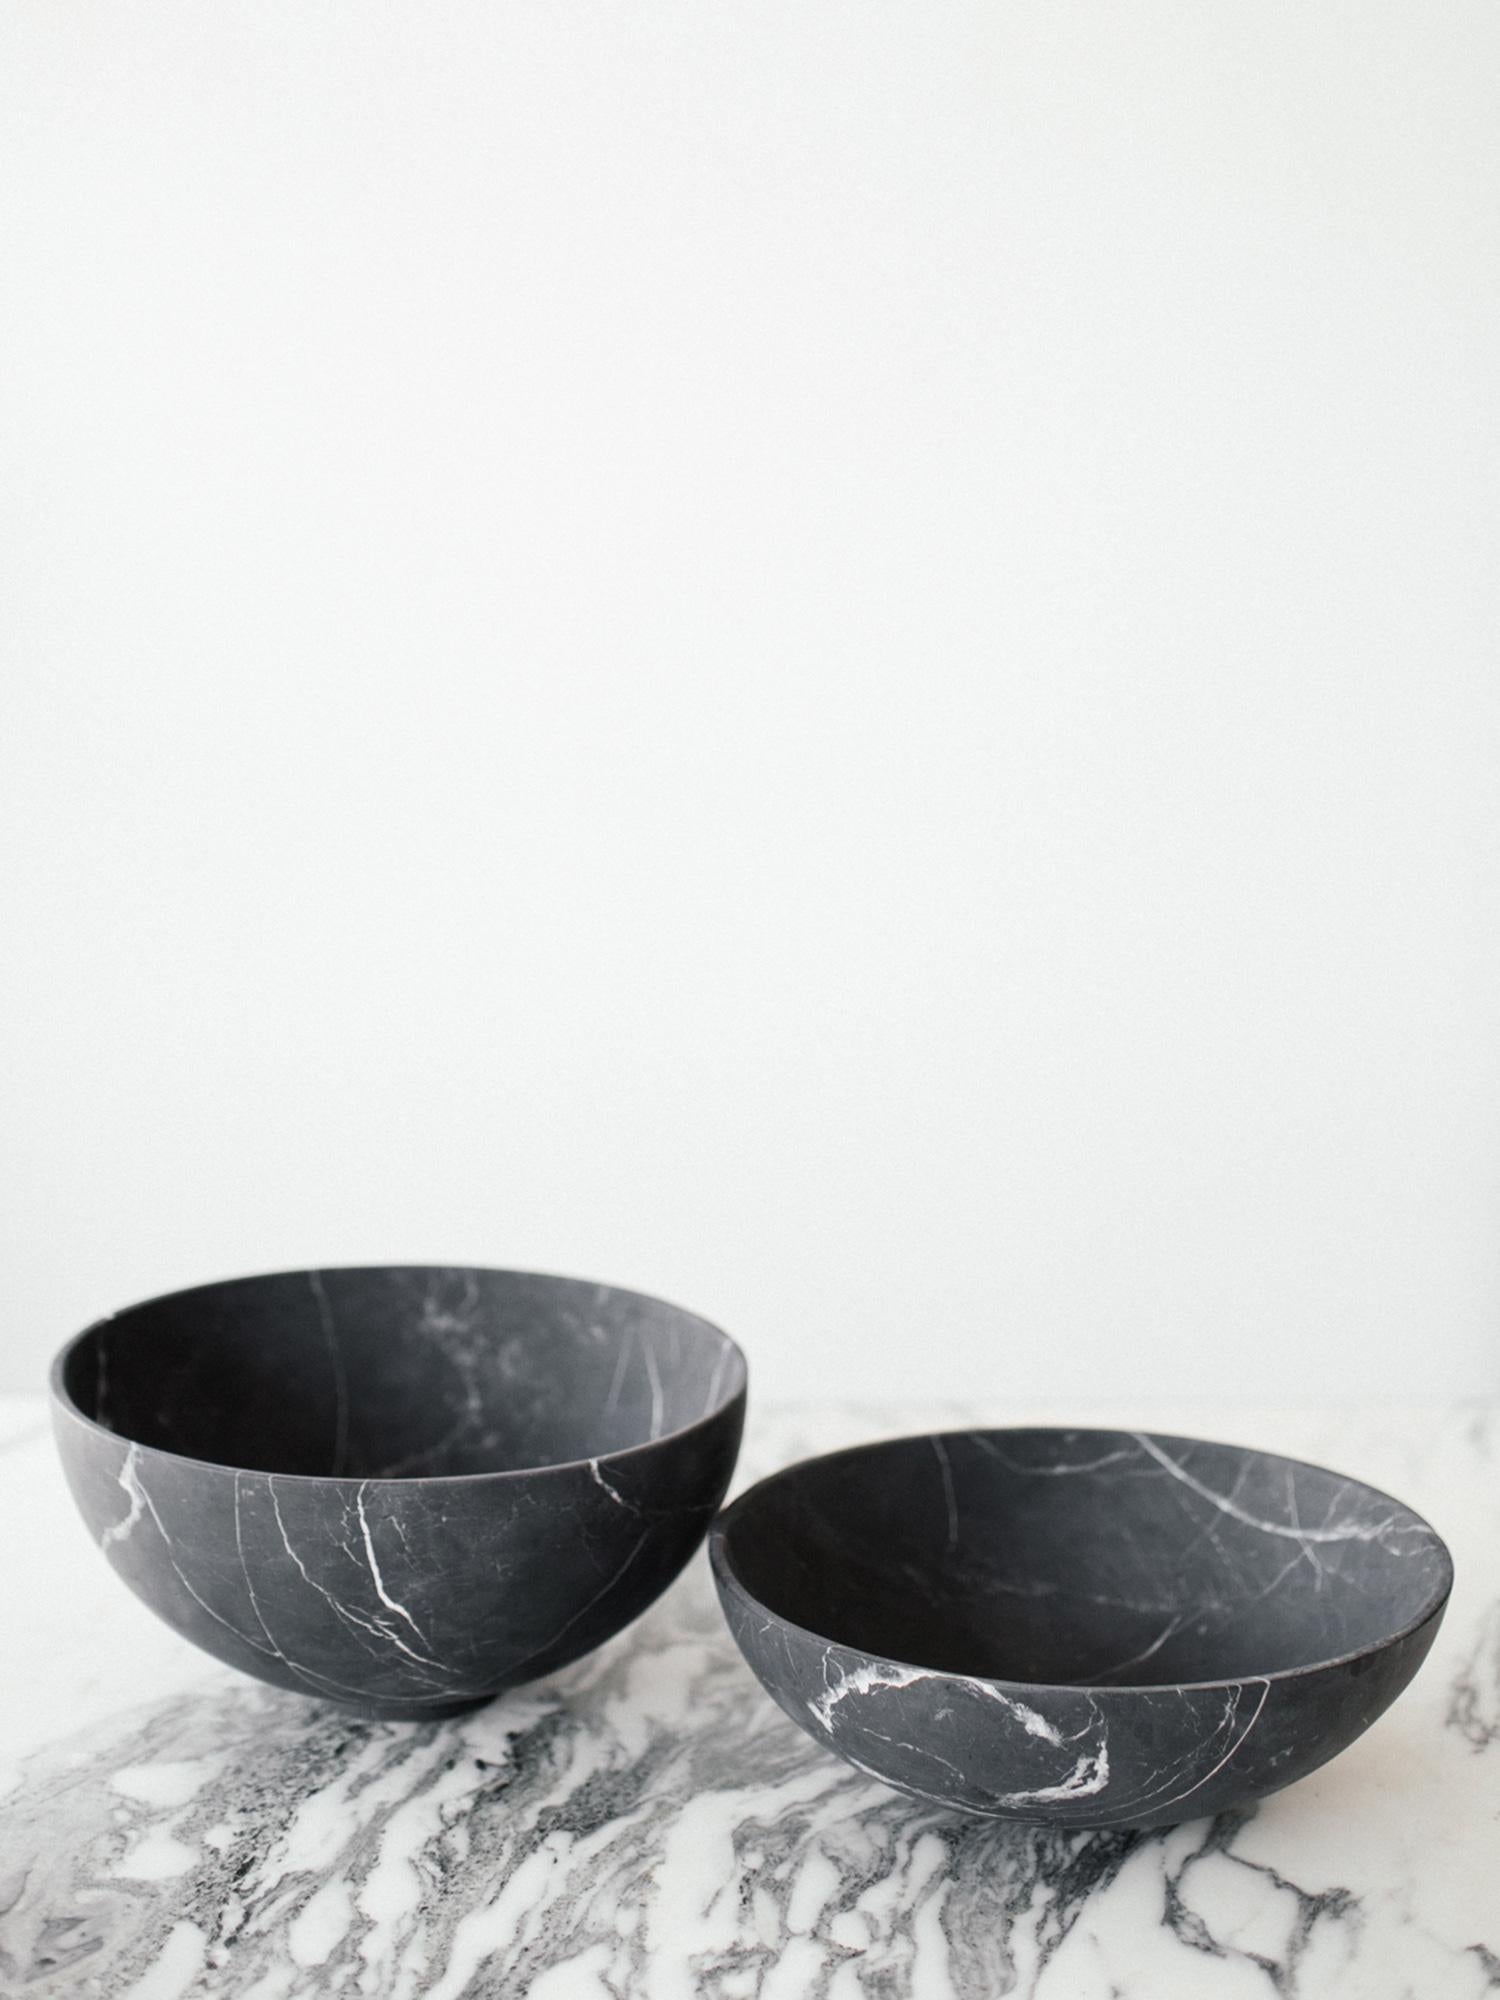 Handgeschnittener schwarzer Marmor Negro Monterrey aus Neuvo Leon, Mexiko.
Handgefertigt von Kunsthandwerkern in Mexiko.

Maße: Grande: 12